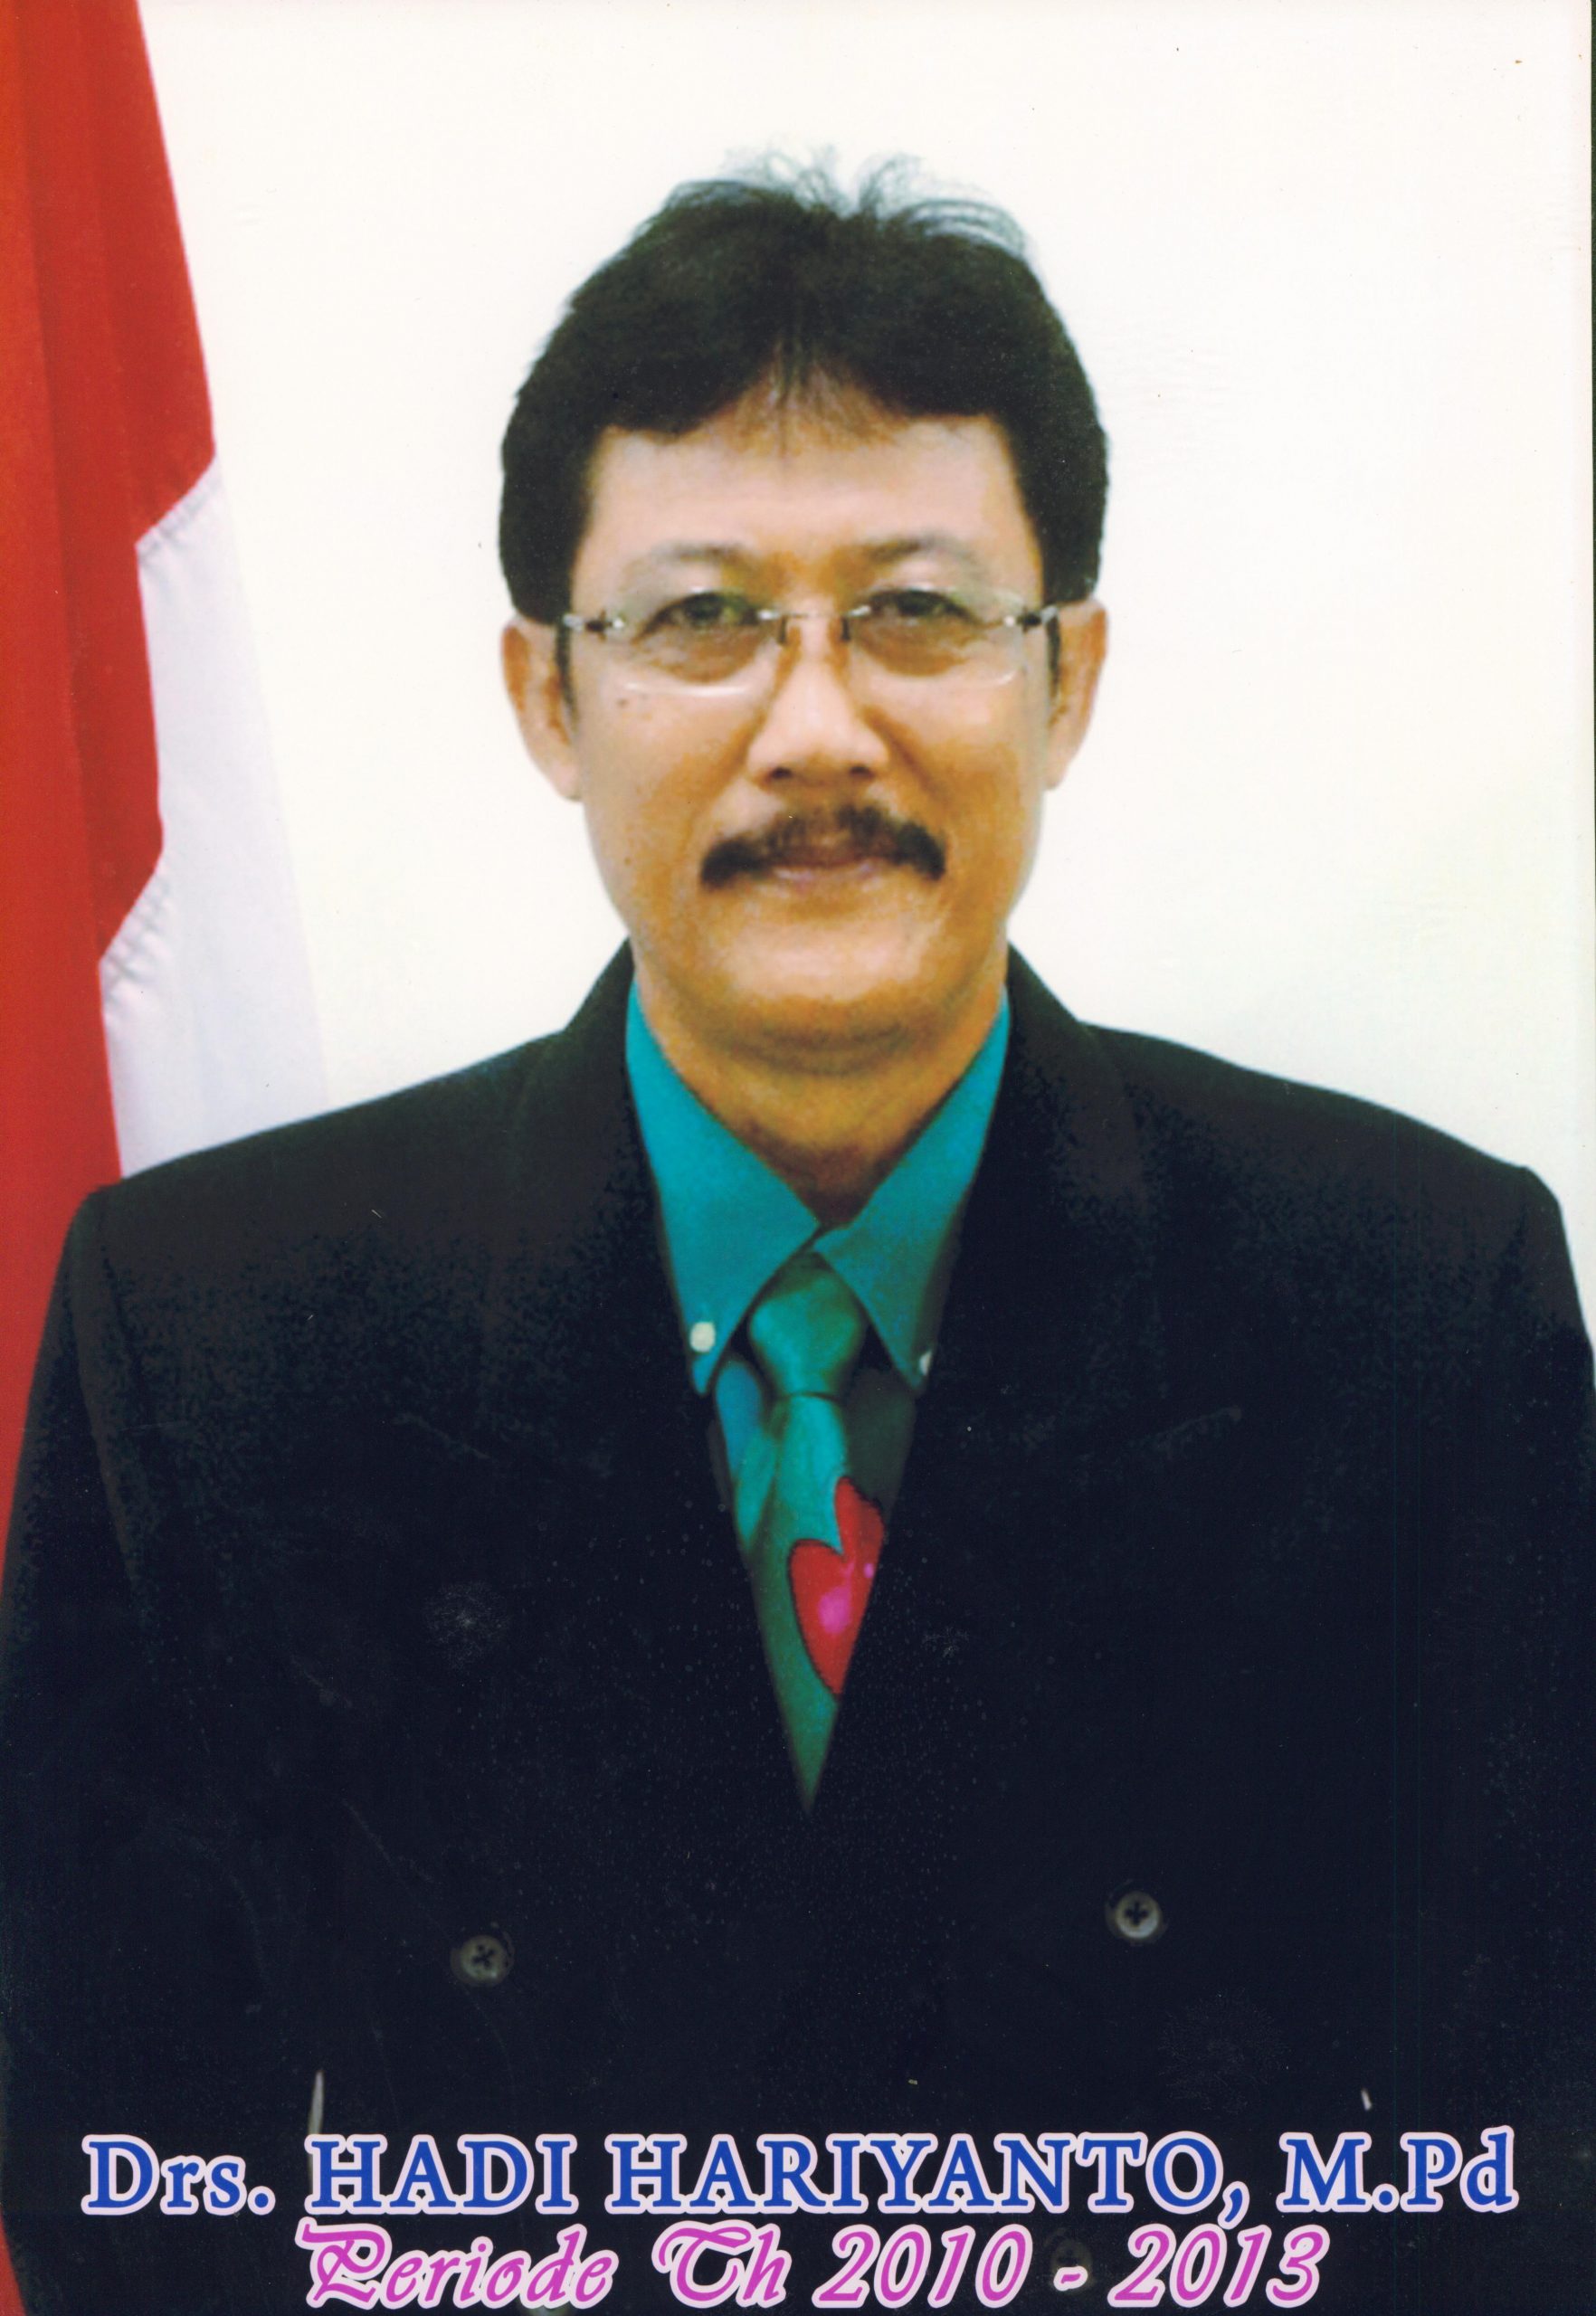 Tahun 2010 - 2013 Drs. Hadi Hariyanto, M.Pd